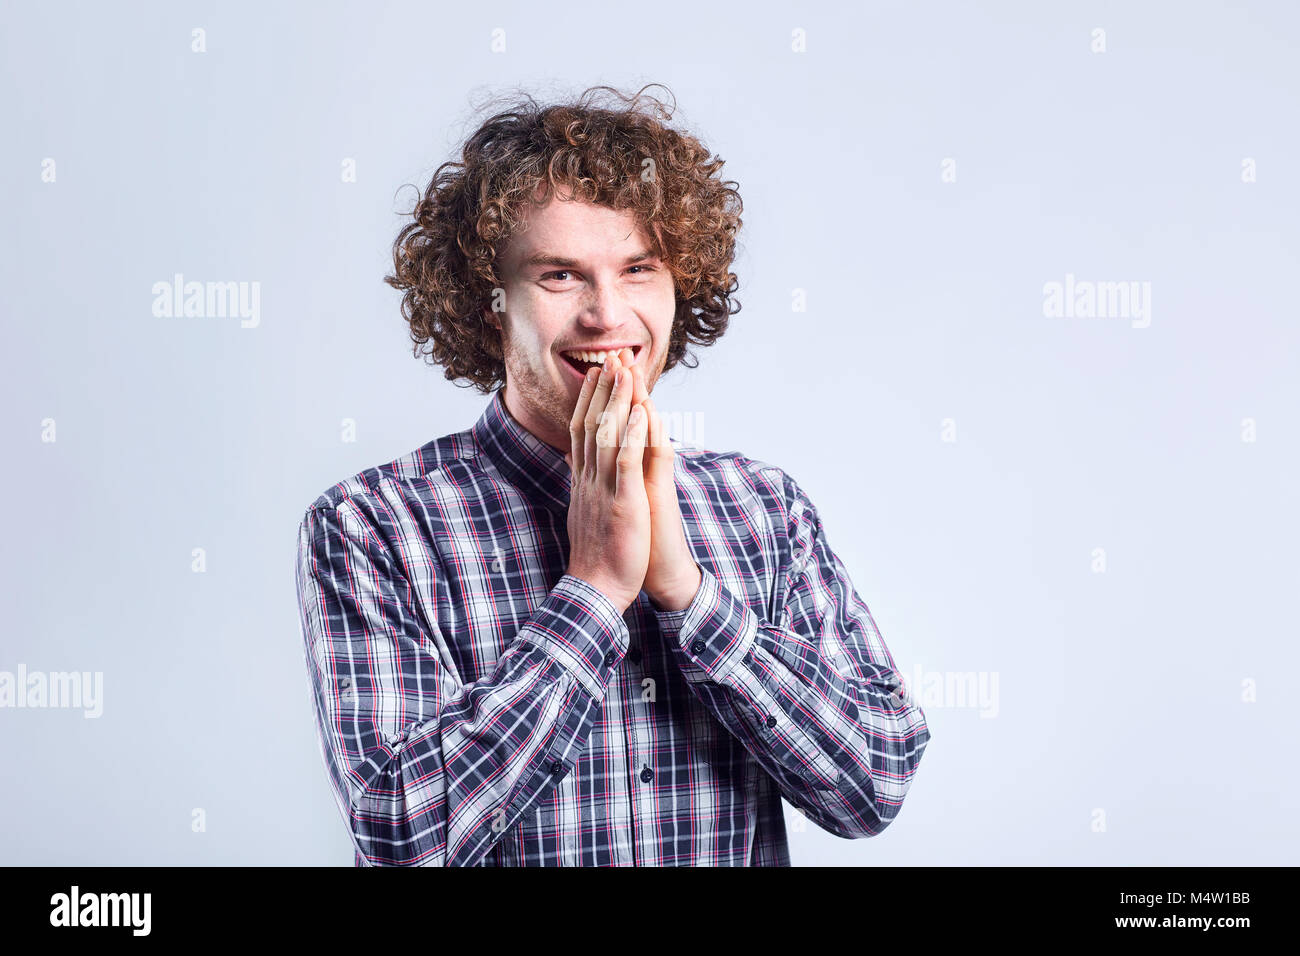 Curly-haired guy sorprendido se regocija con una emoción positiva. Foto de stock